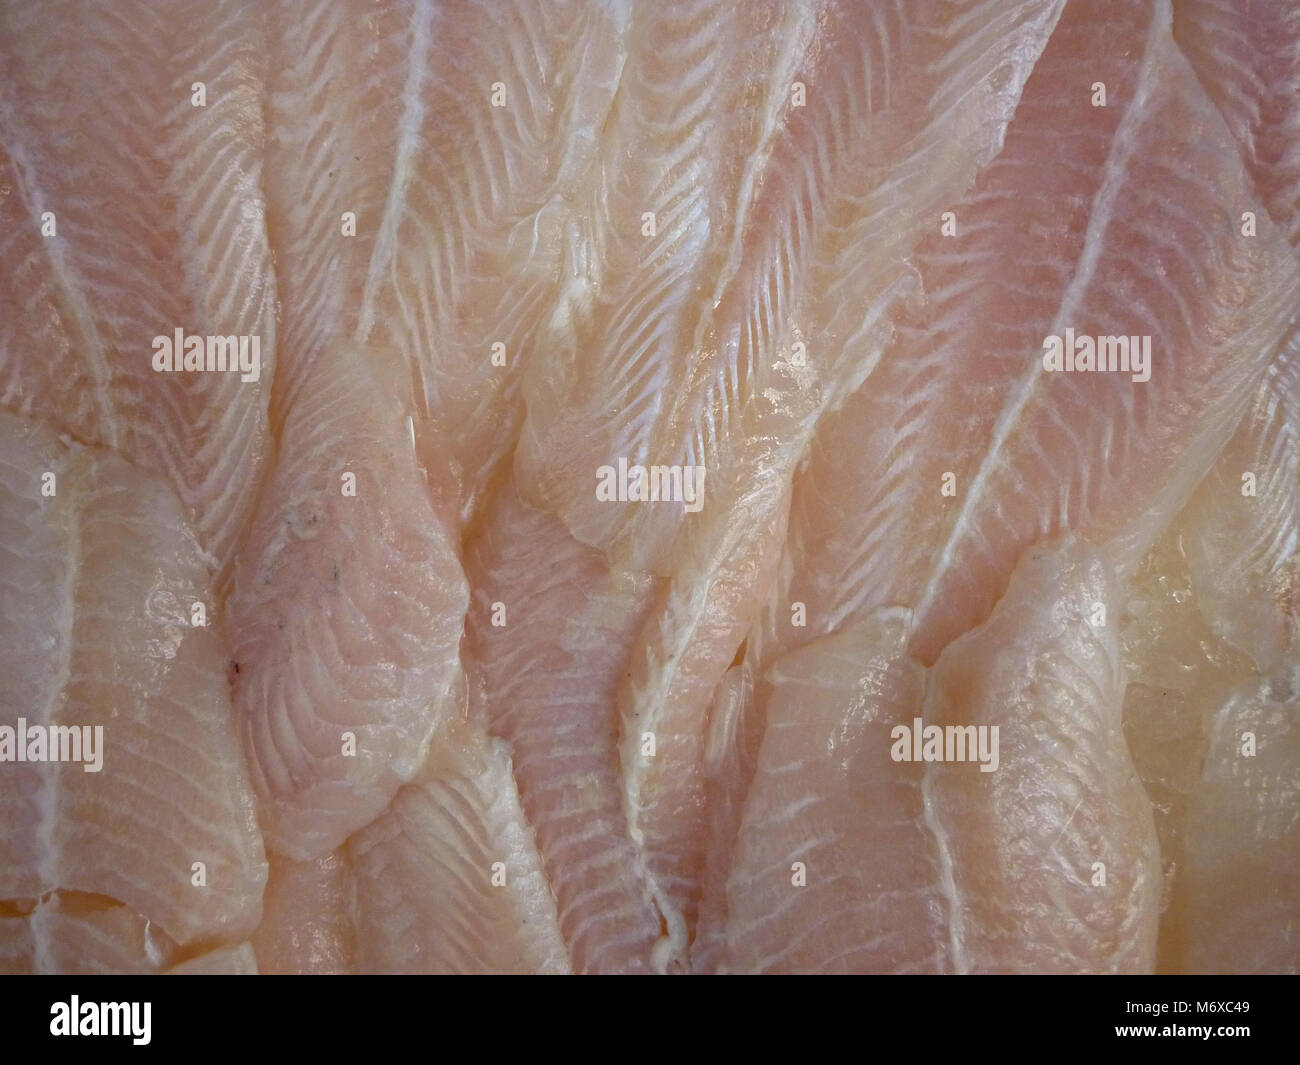 Fresco di filetti di merluzzo nel mercato del pesce, close up Foto Stock